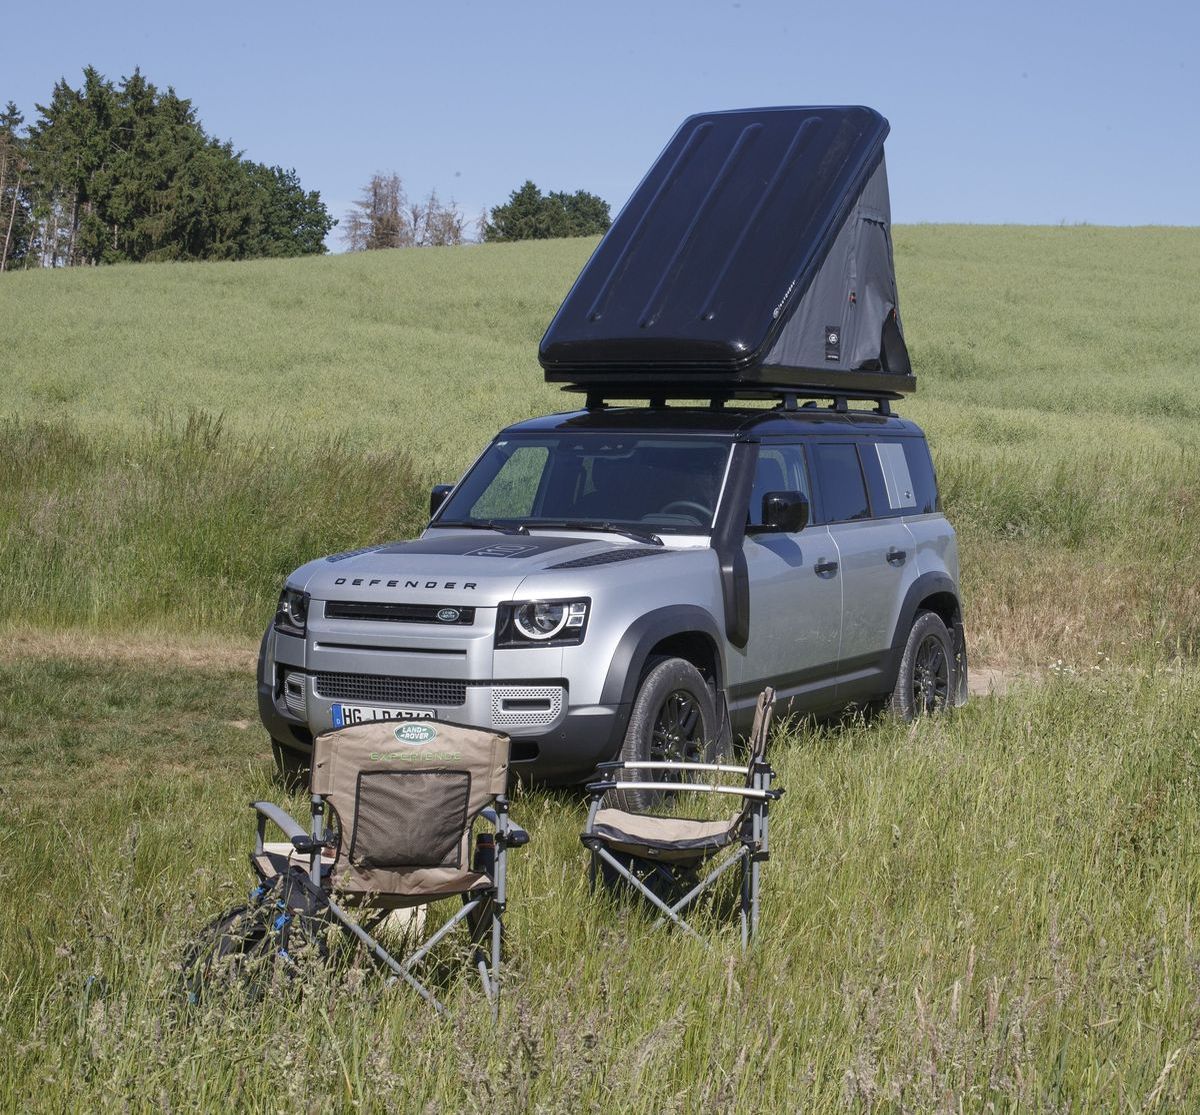 Land Rover vermietet den Defender 110 auf Wunsch auch mit Dachzelt, Fahrradträger und Campingmobiliar.